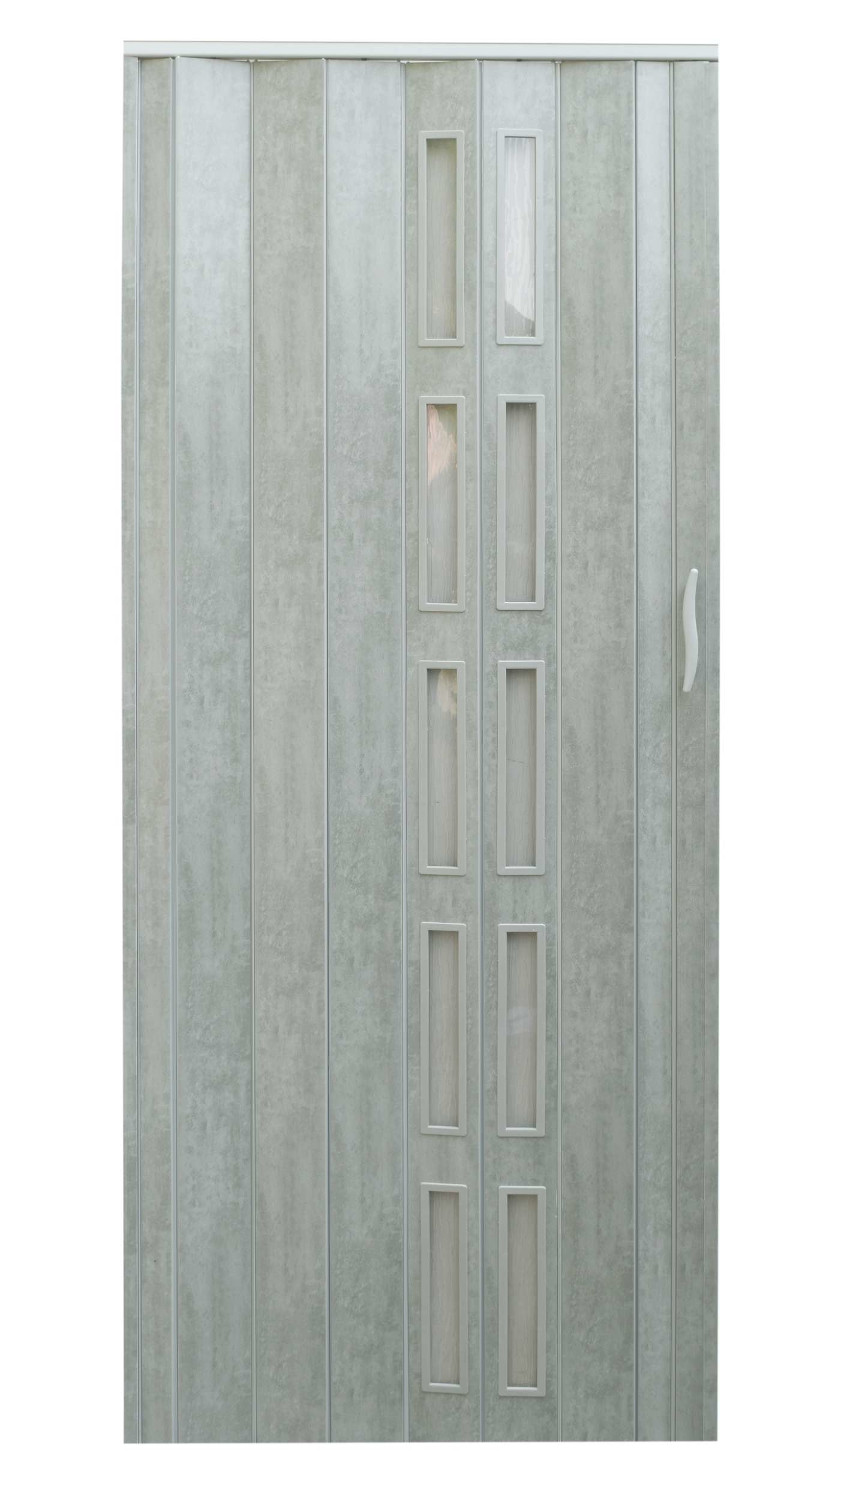  Drzwi harmonijkowe 001P-61-90 beton mat 90 cm